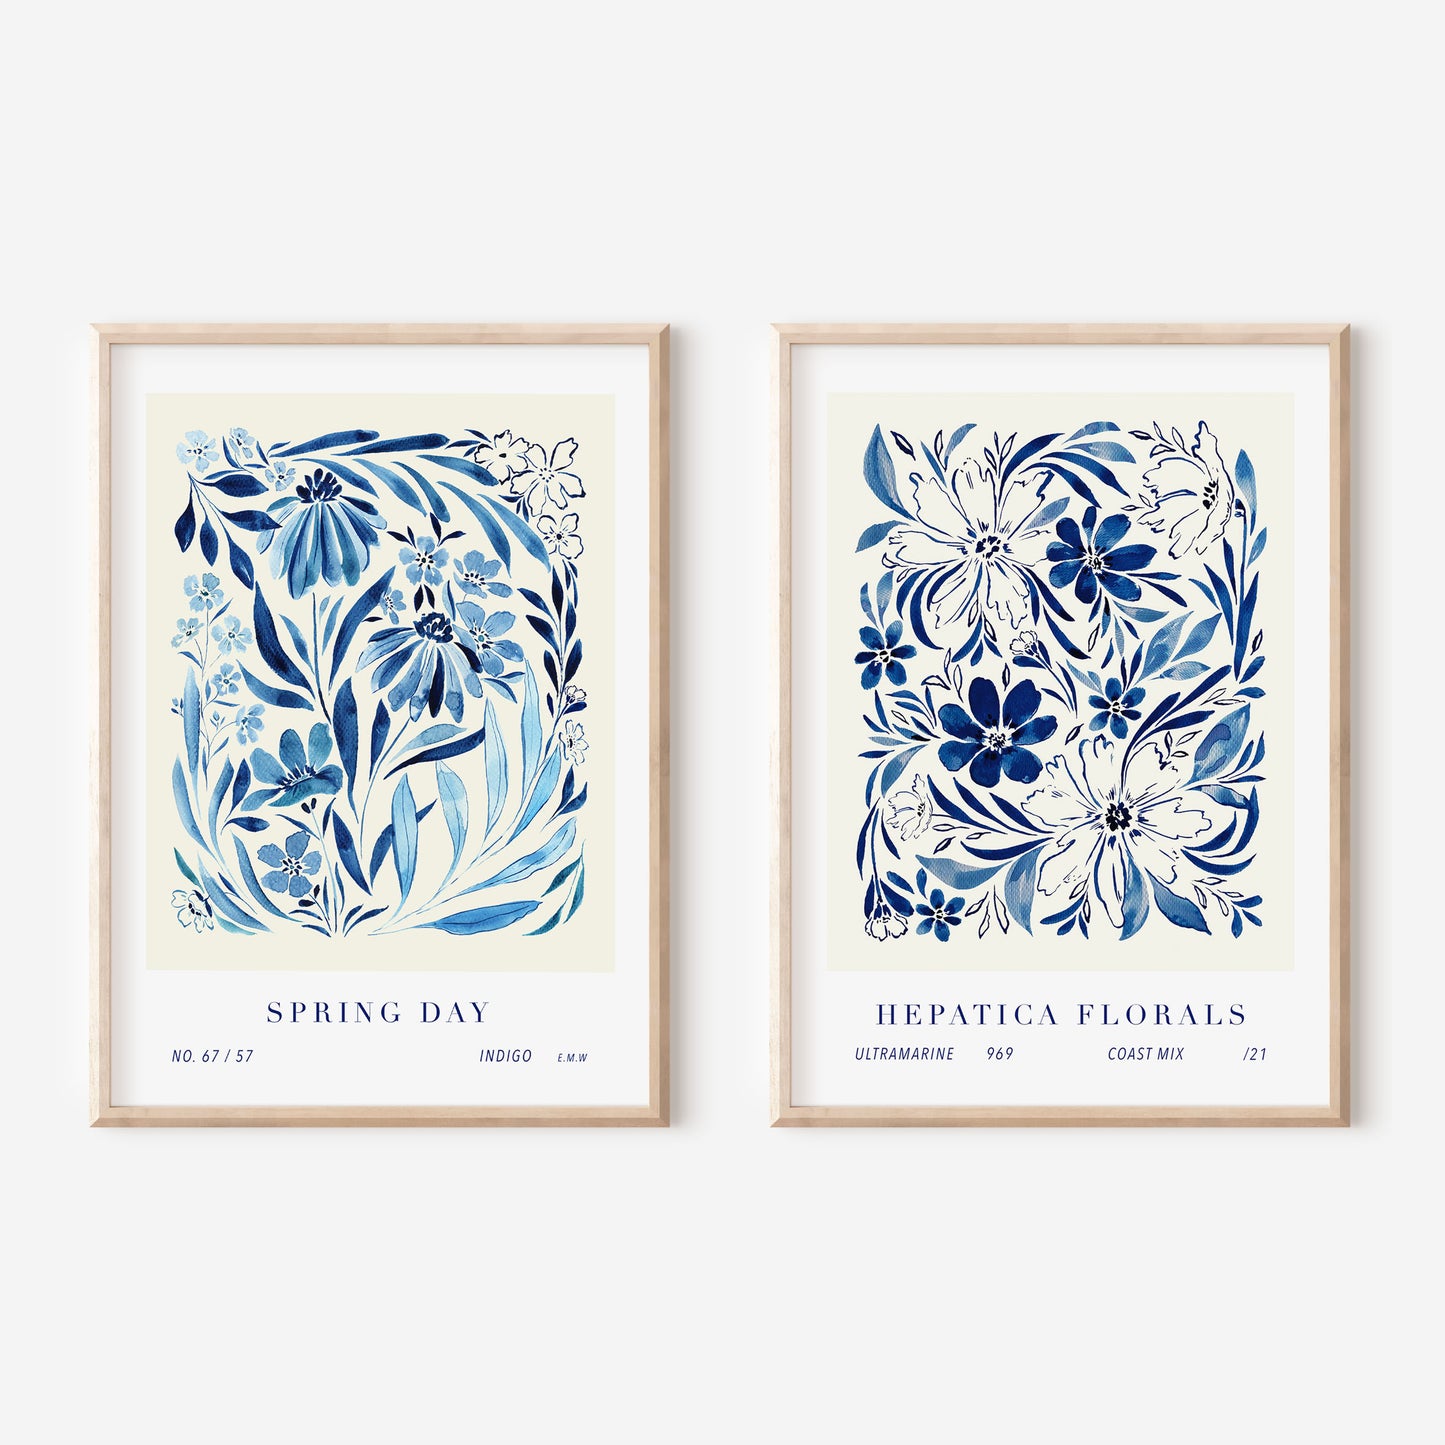 Hepatica Florals Art Print